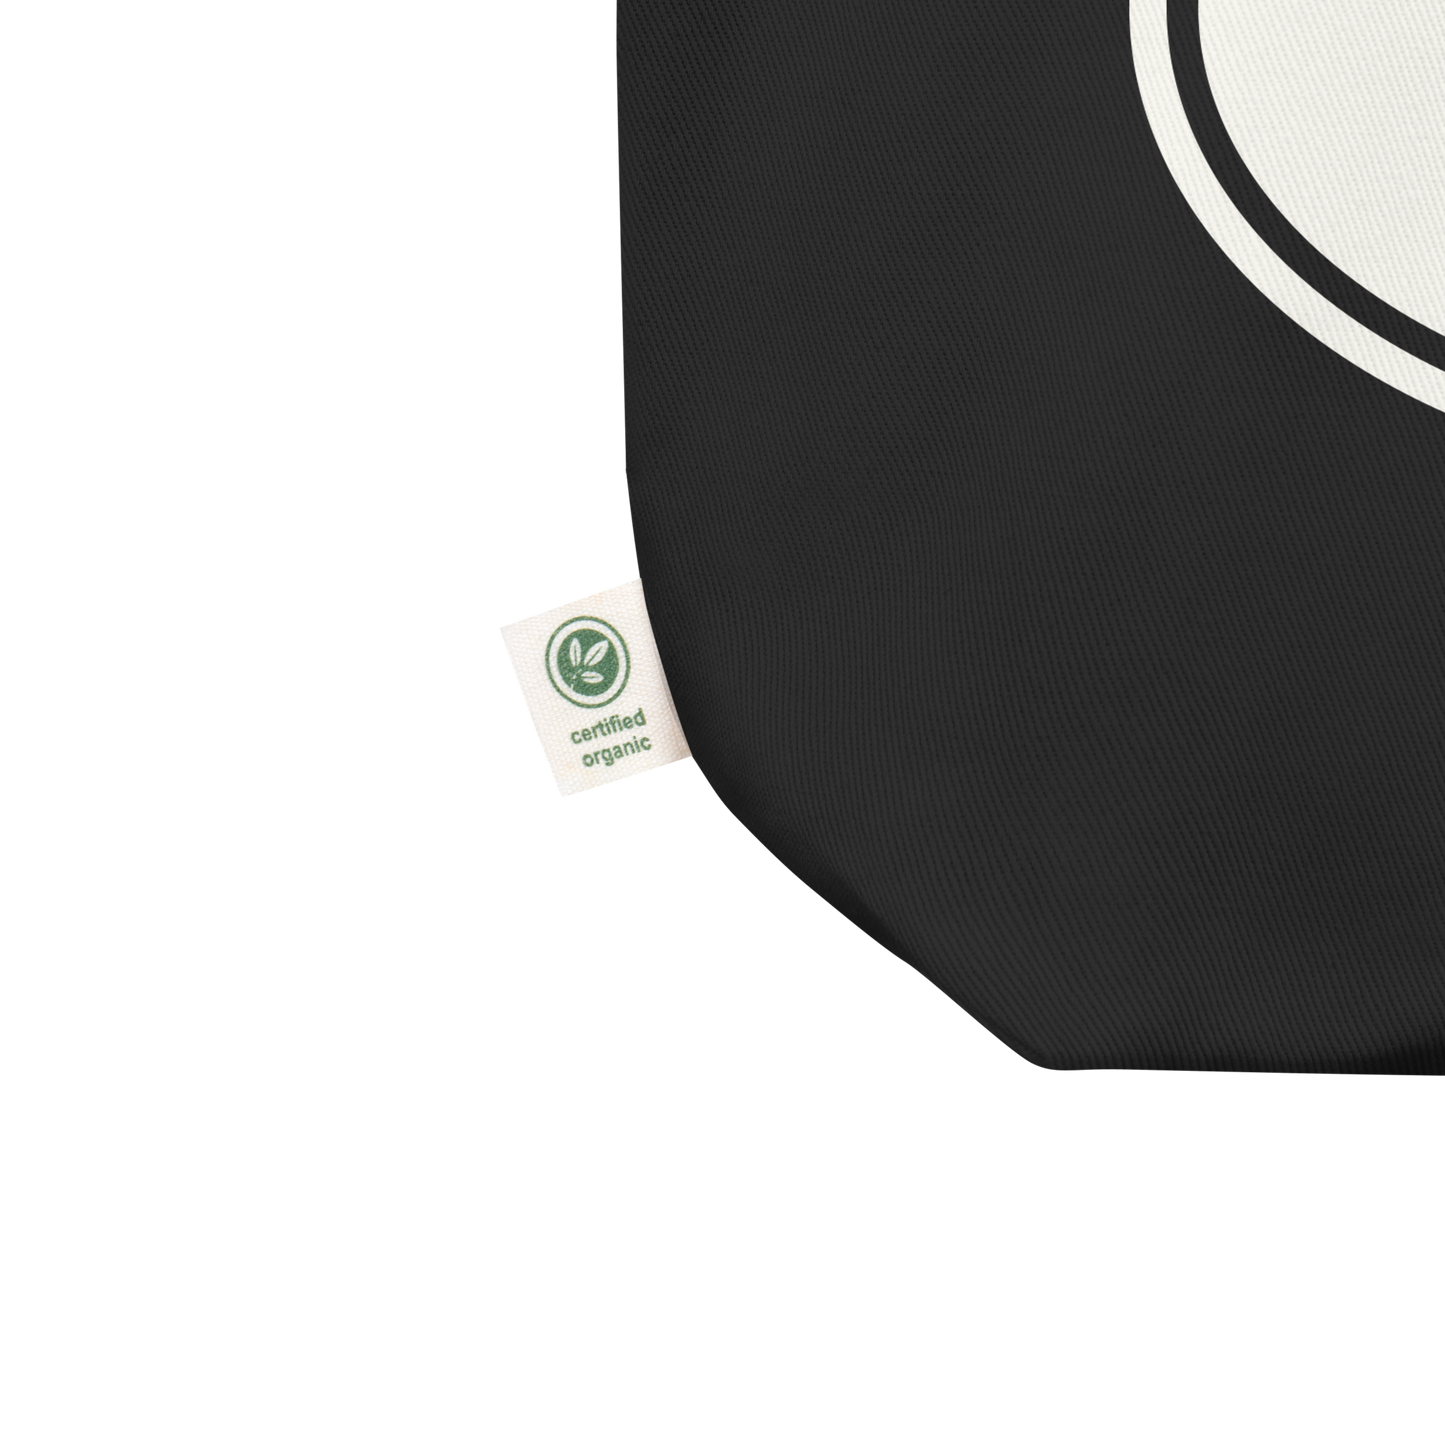 Oval Car Sticker Eco Tote Bag • White Graphic